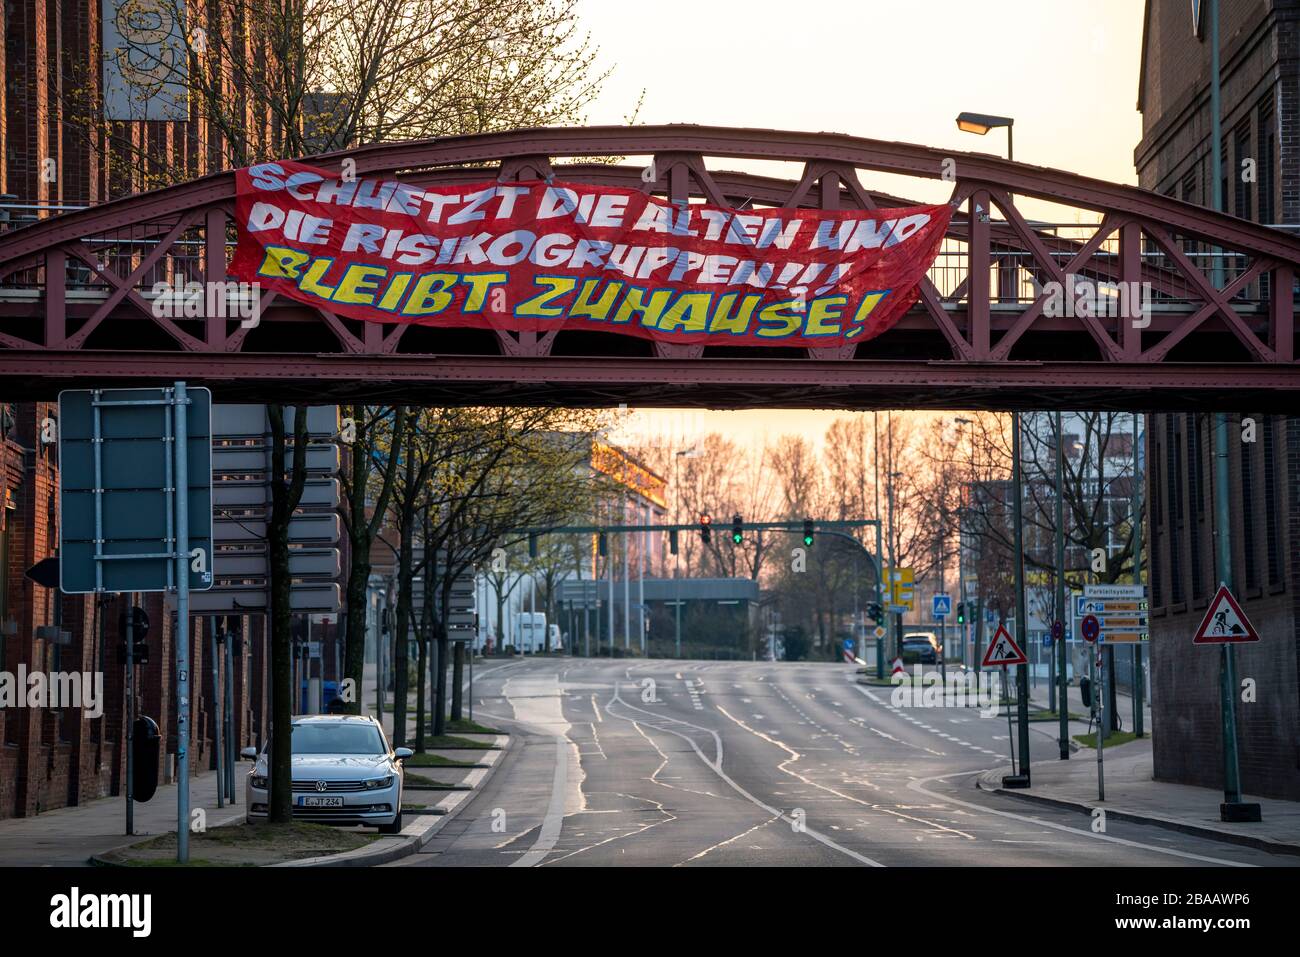 Big Banner calls on people to stay at home, calls for solidarity, Altendorfer Strasse, Auswirkungen der Coronavirus Pandemie in Deutschland, Essen Stock Photo